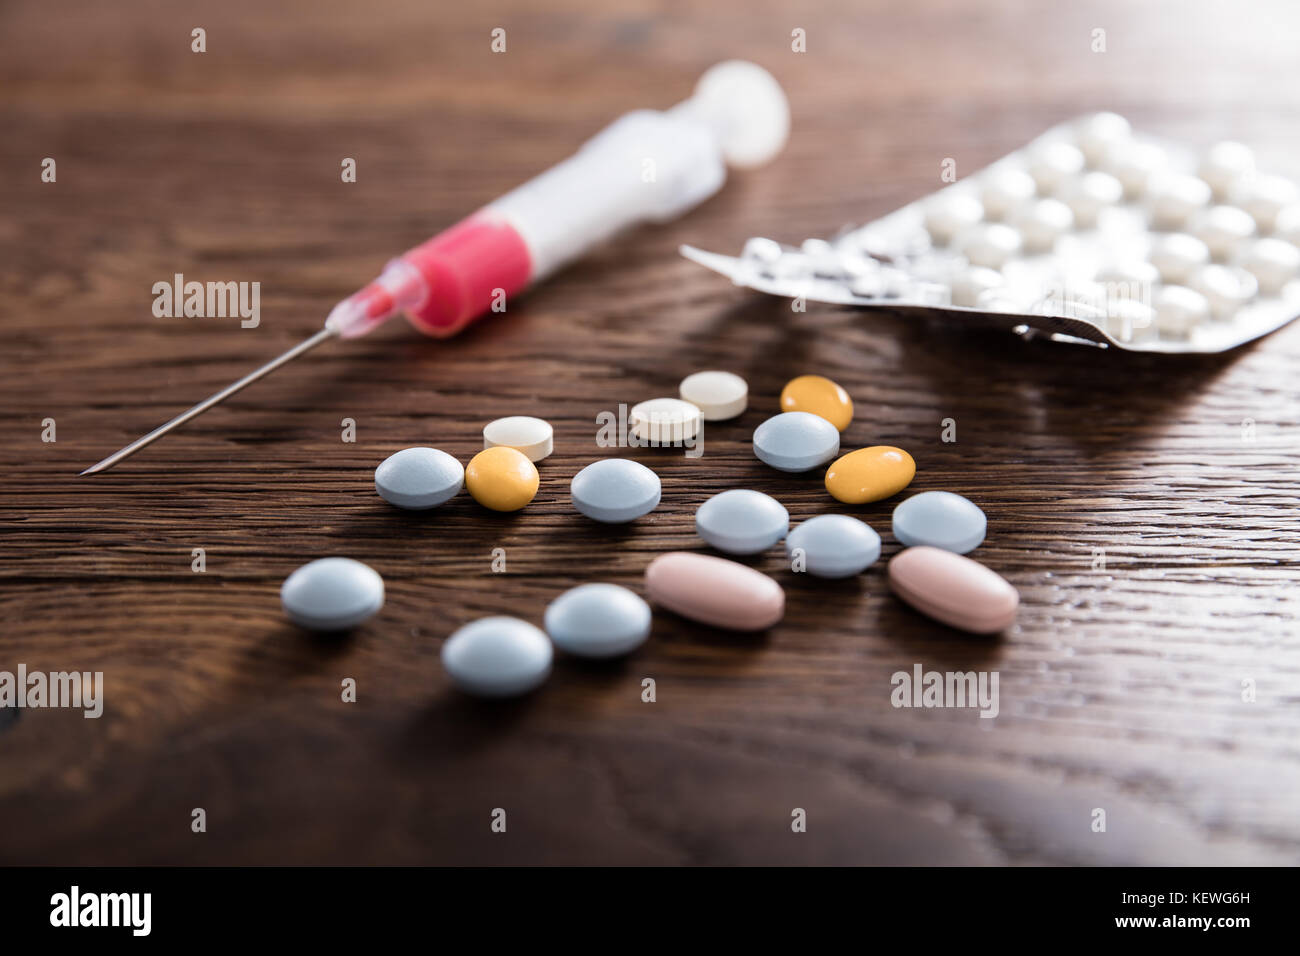 Droge Spritze eine narkotische Pillen auf hölzernen Schreibtisch Stockfoto